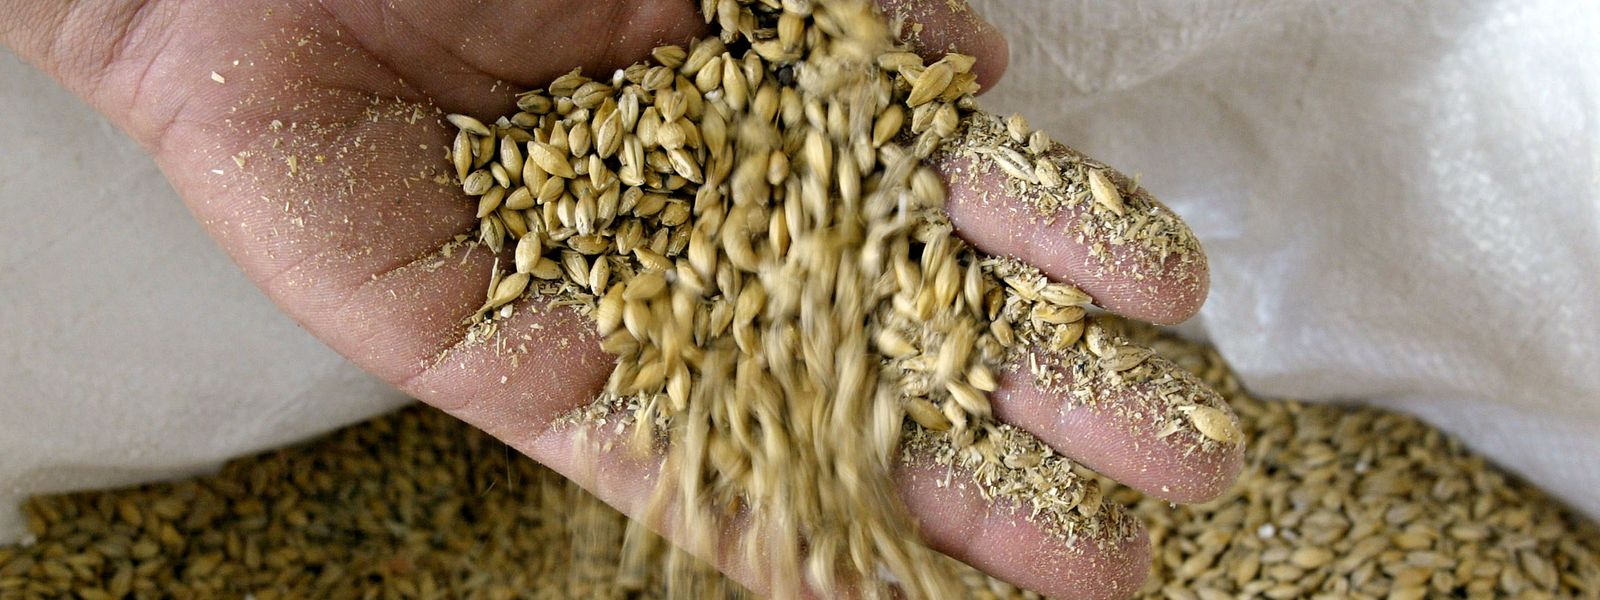 Em 2021, a Rússia e a Ucrânia estavam entre os maiores exportadores de cereais e sementes de girassol.